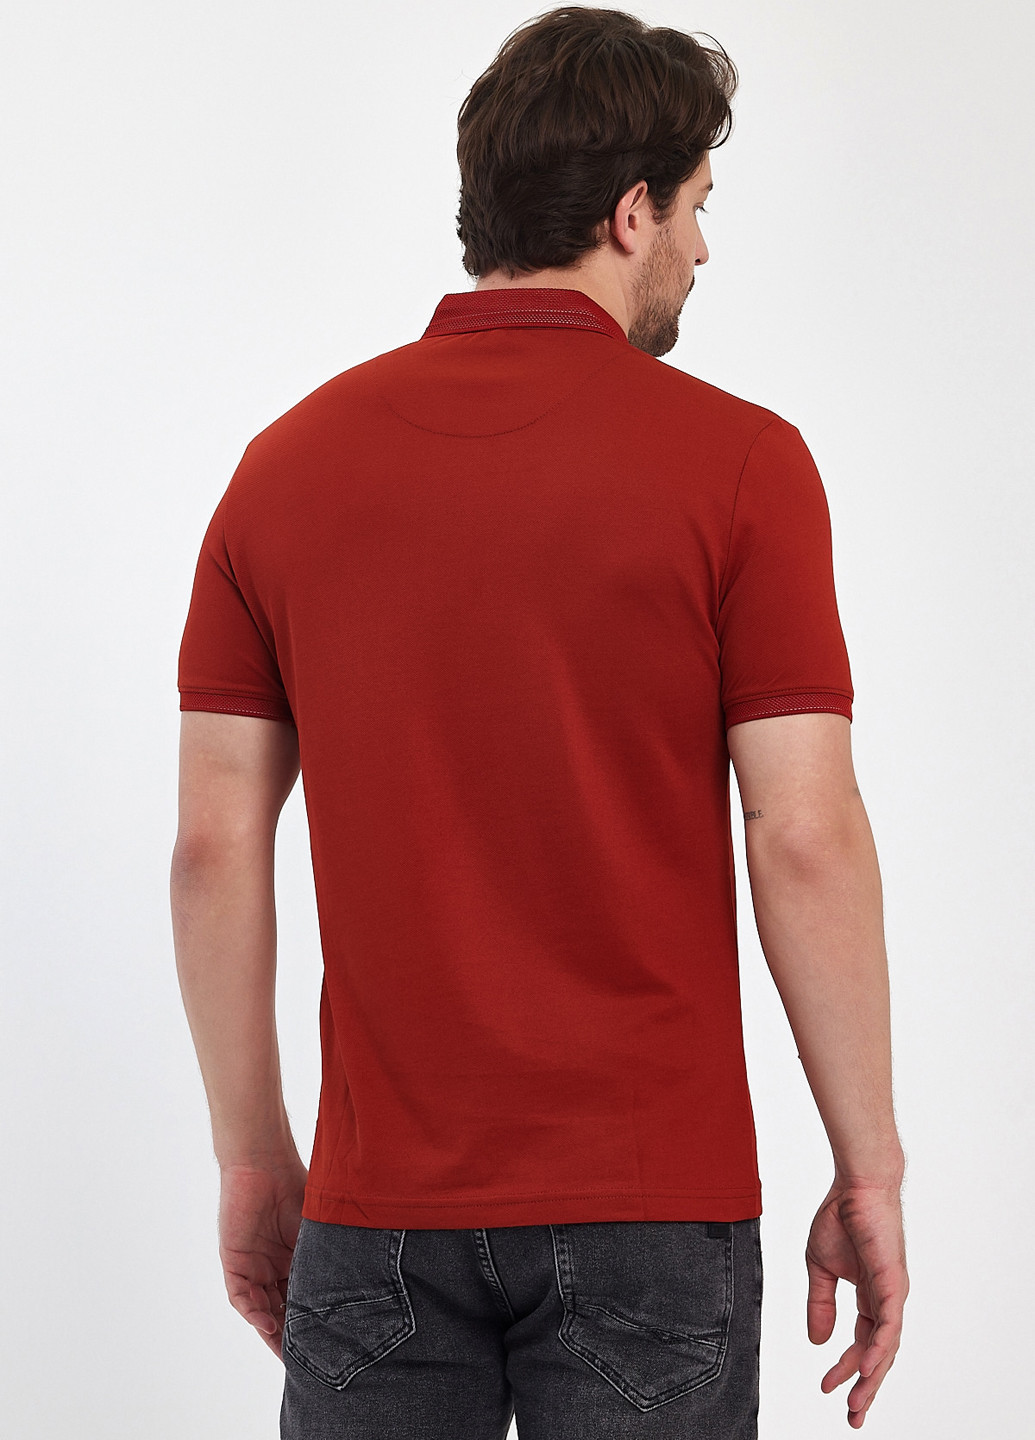 Терракотовая футболка-поло для мужчин Trend Collection однотонная